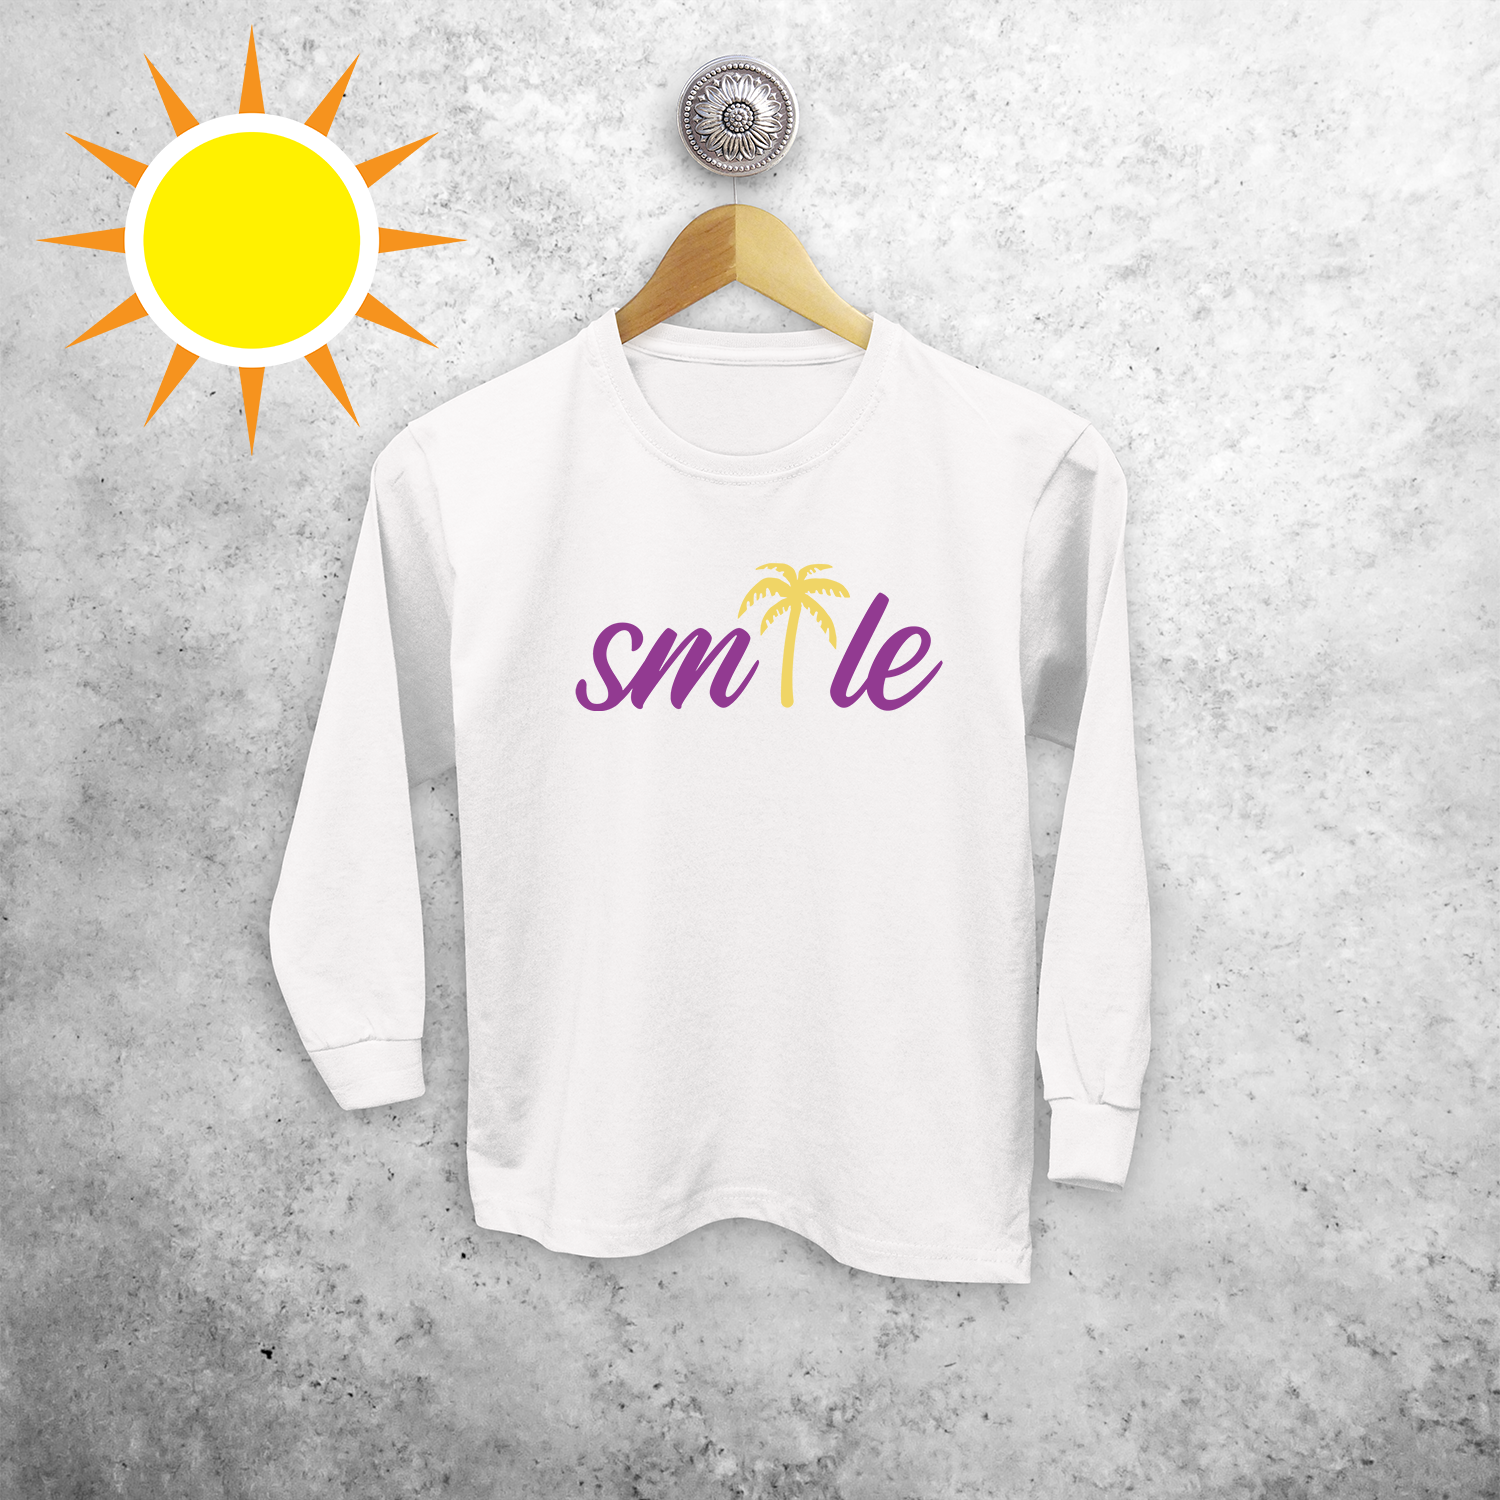 Smile' magisch kind shirt met lange mouwen